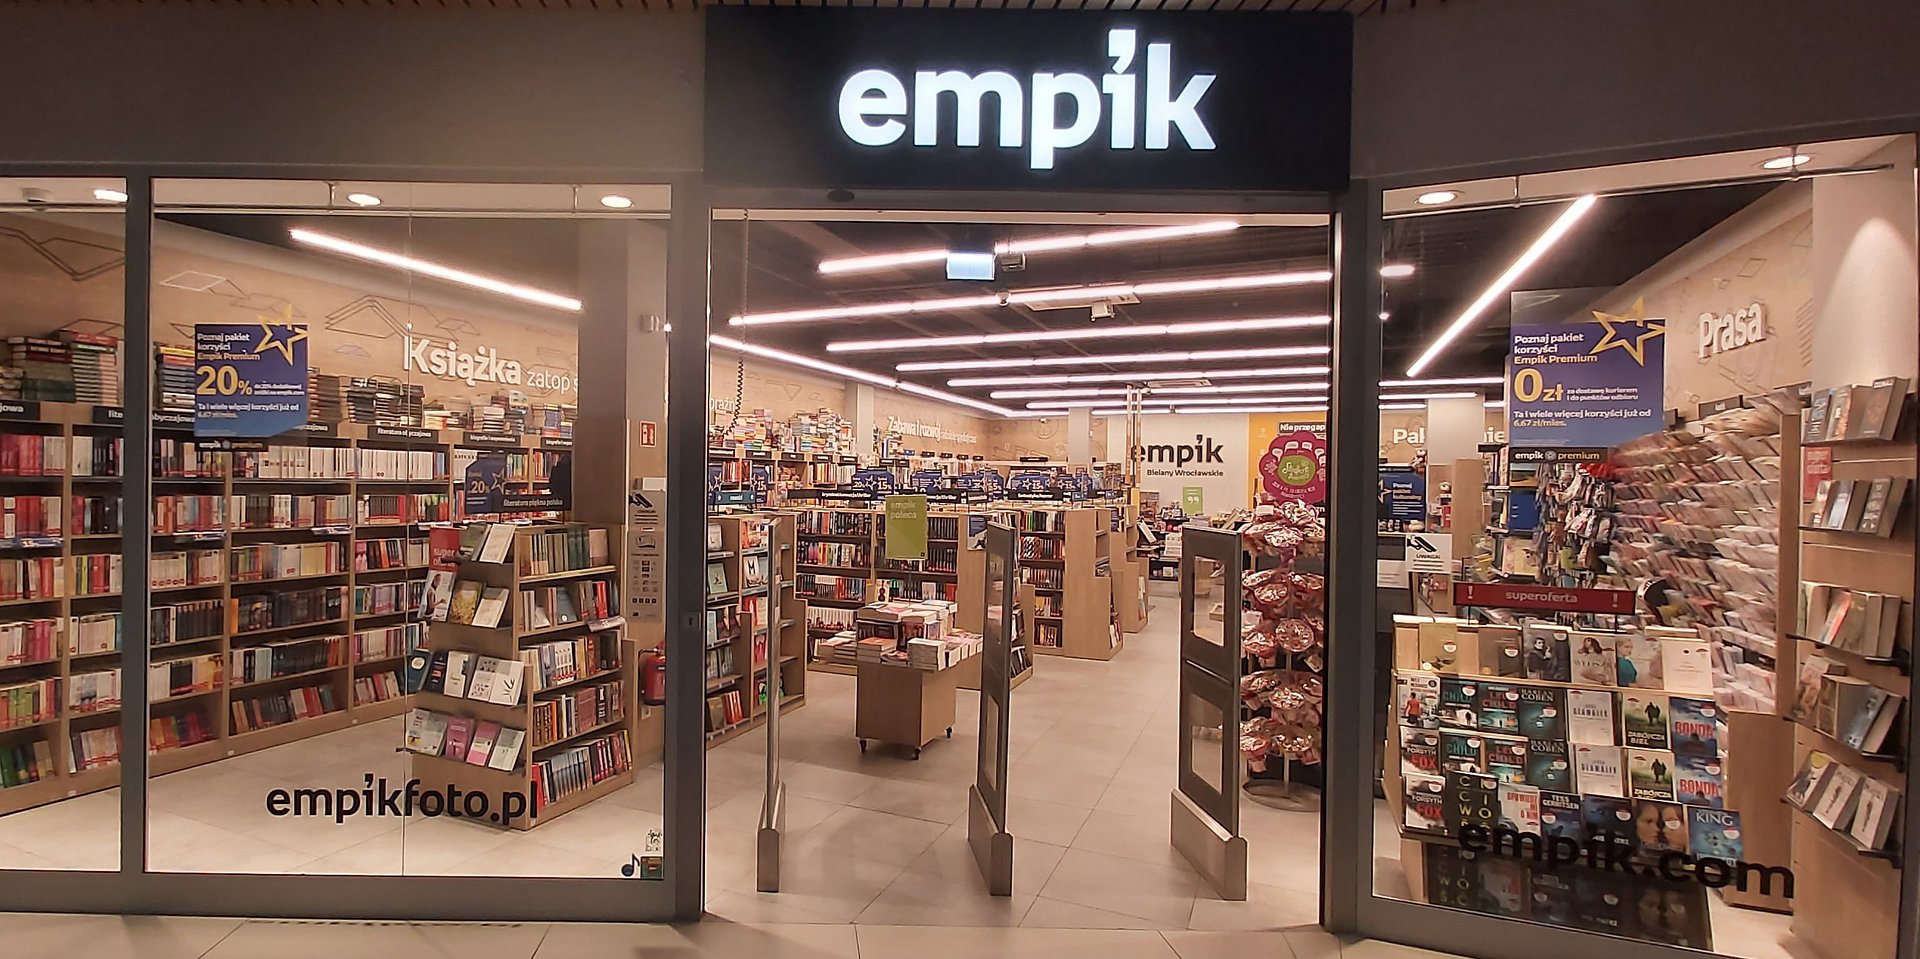 Empik wznawia działalność części salonów w wyniku porozumień z właścicielami obiektów handlowych